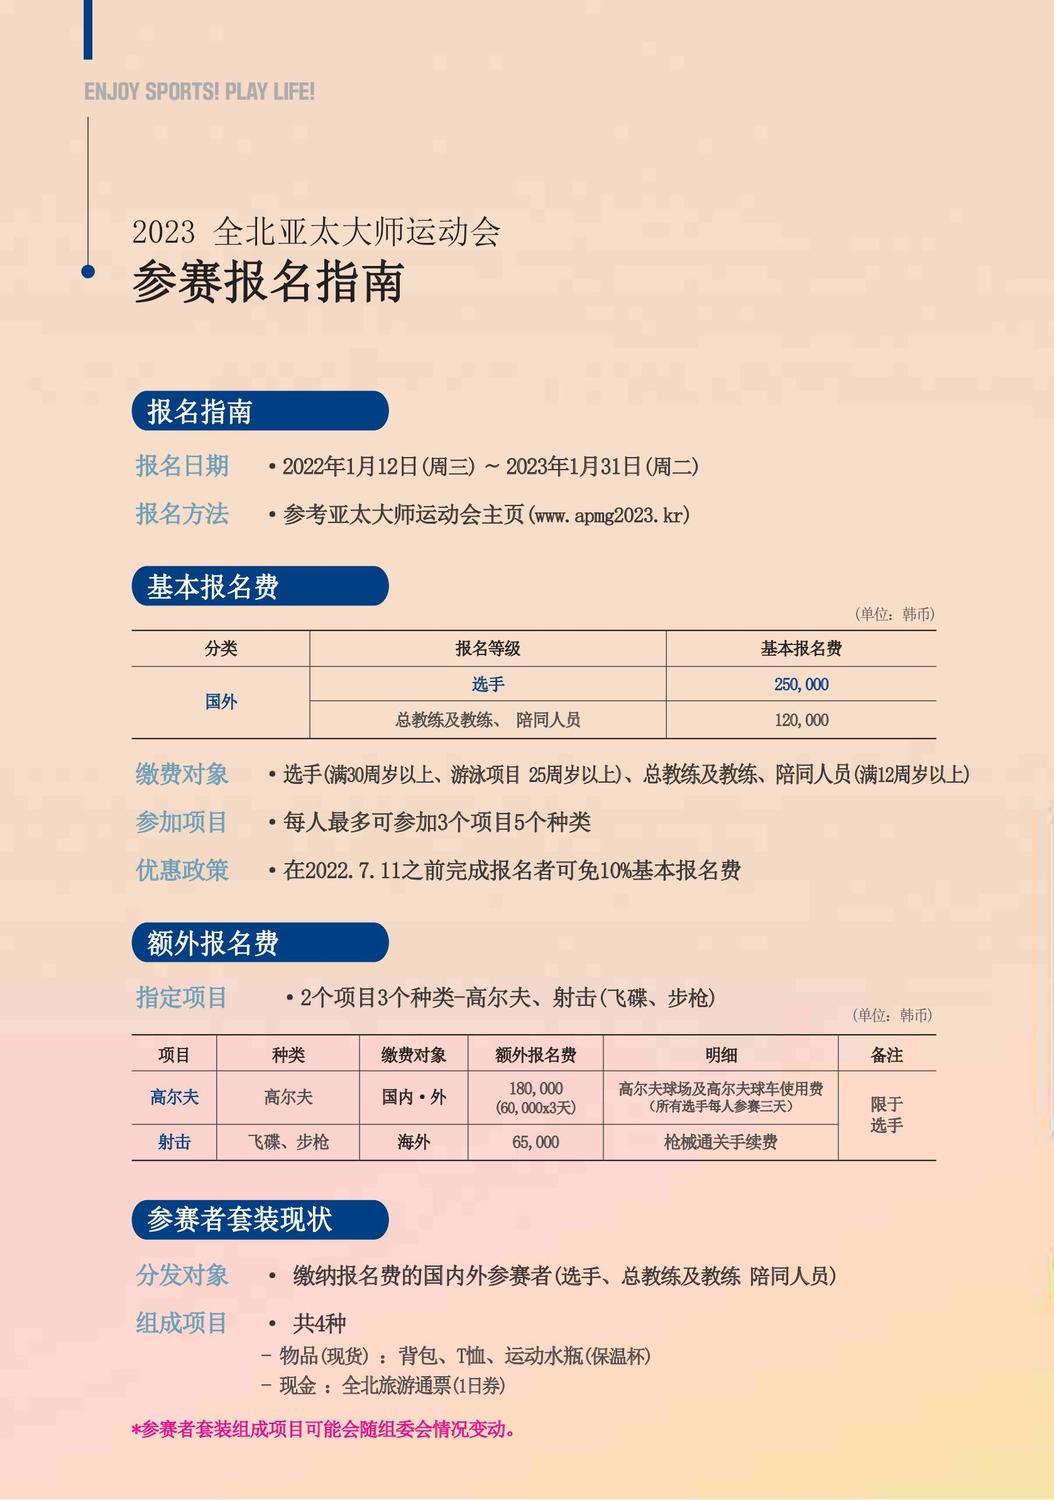 亚太大师赛中文宣传册_压缩版_03.jpg